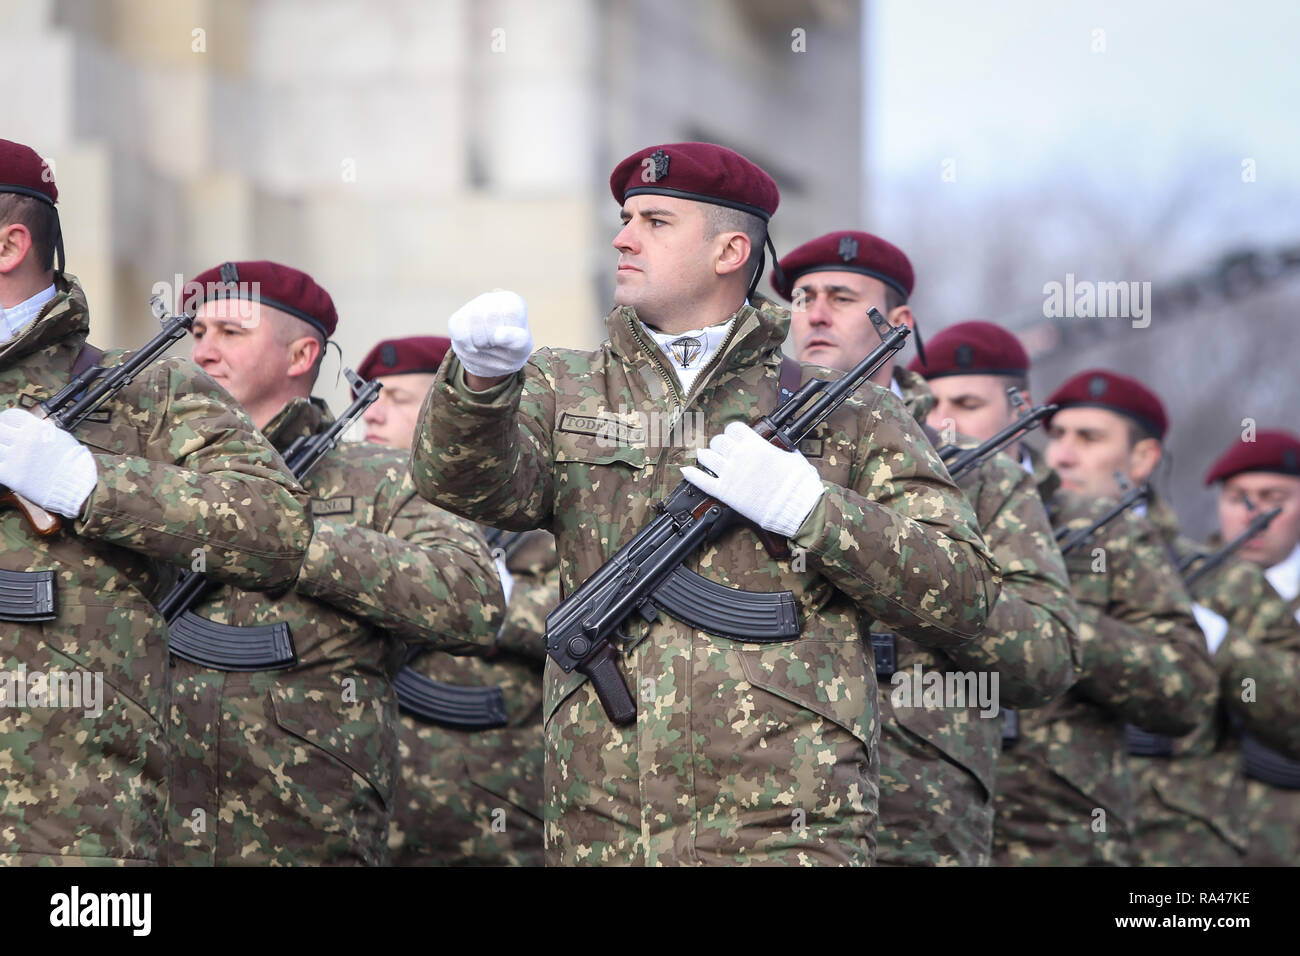 Bukarest, Rumänien - Dezember 1, 2018: Die rumänische Armee Soldaten, bewaffnet mit AK-47 Sturmgewehren, nehmen Sie teil an der rumänischen nationalen Tag militärische Parade Stockfoto